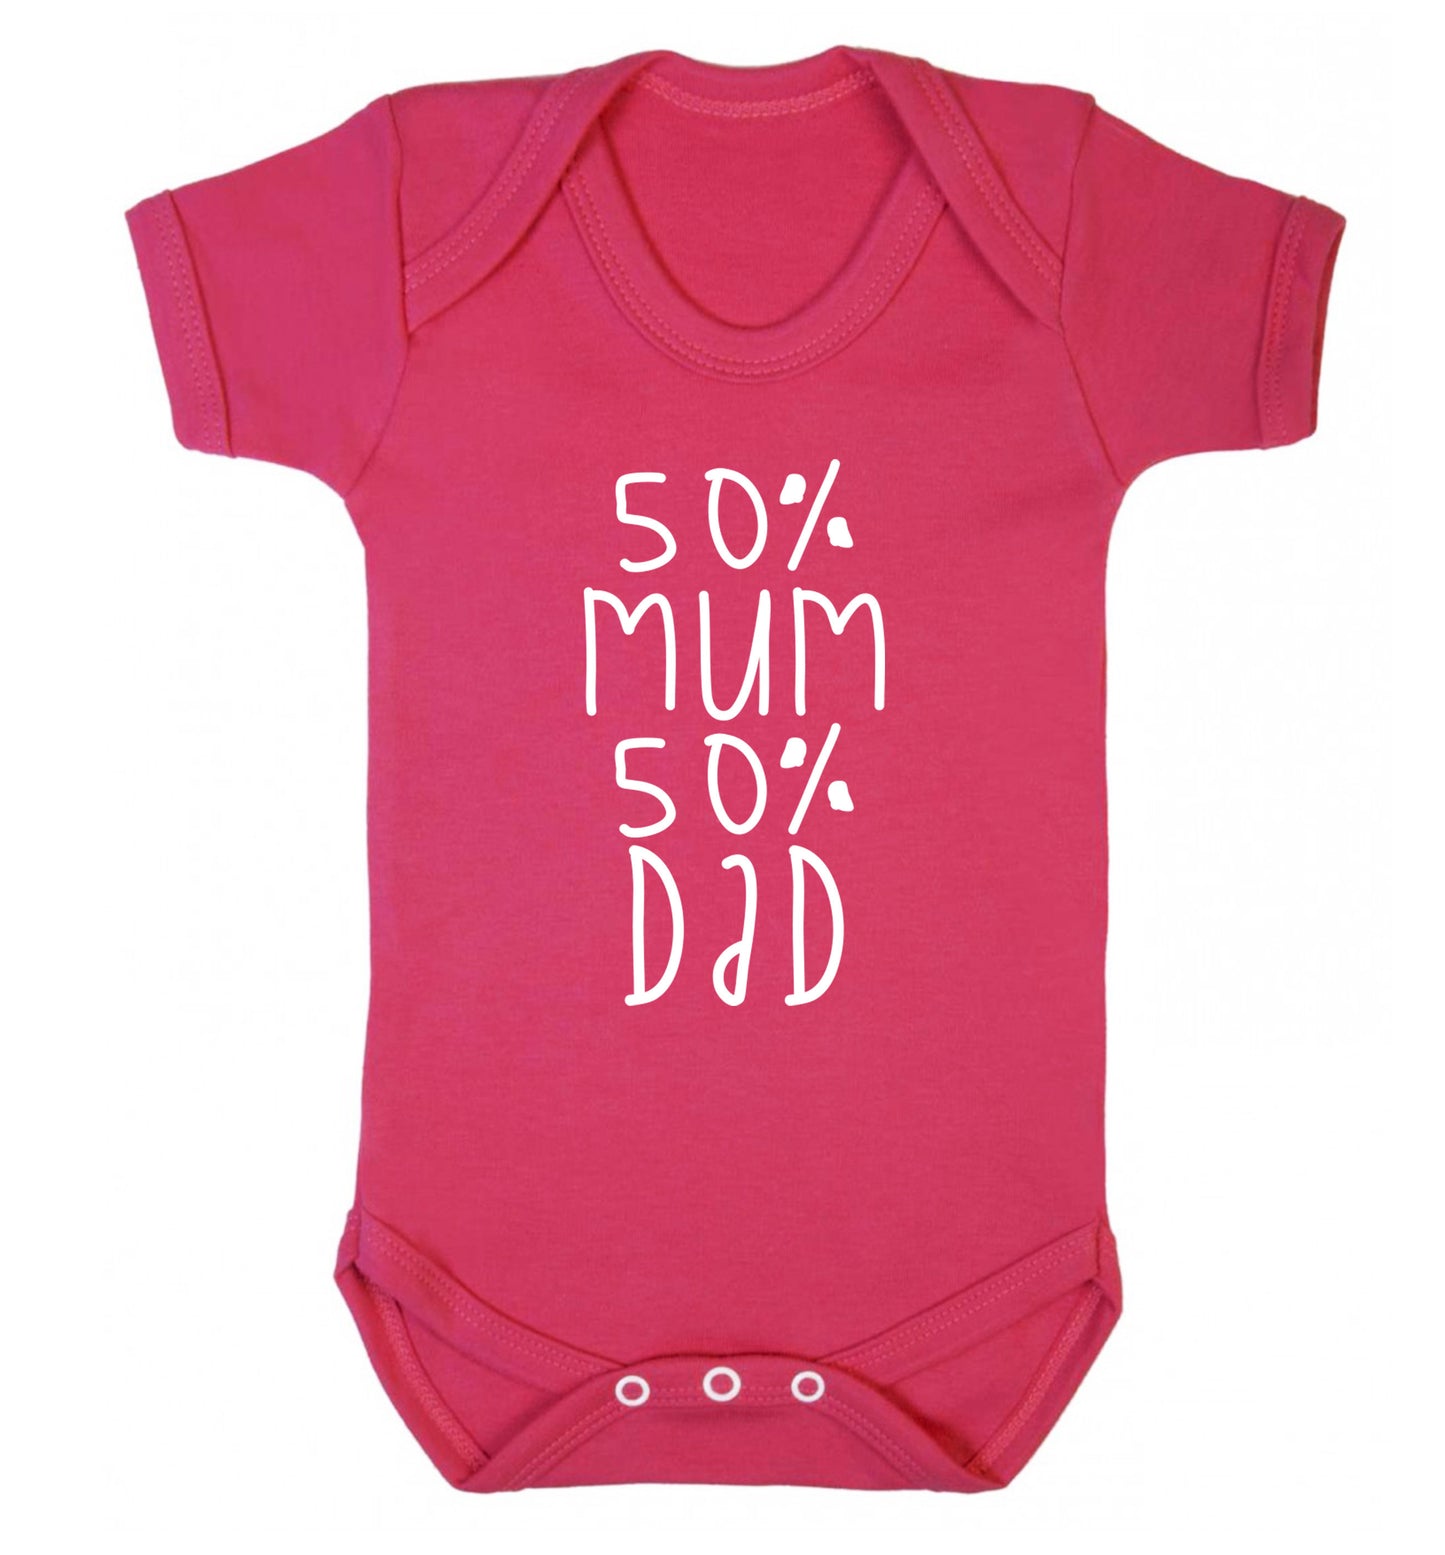 50% mum 50% dad Baby Vest dark pink 18-24 months